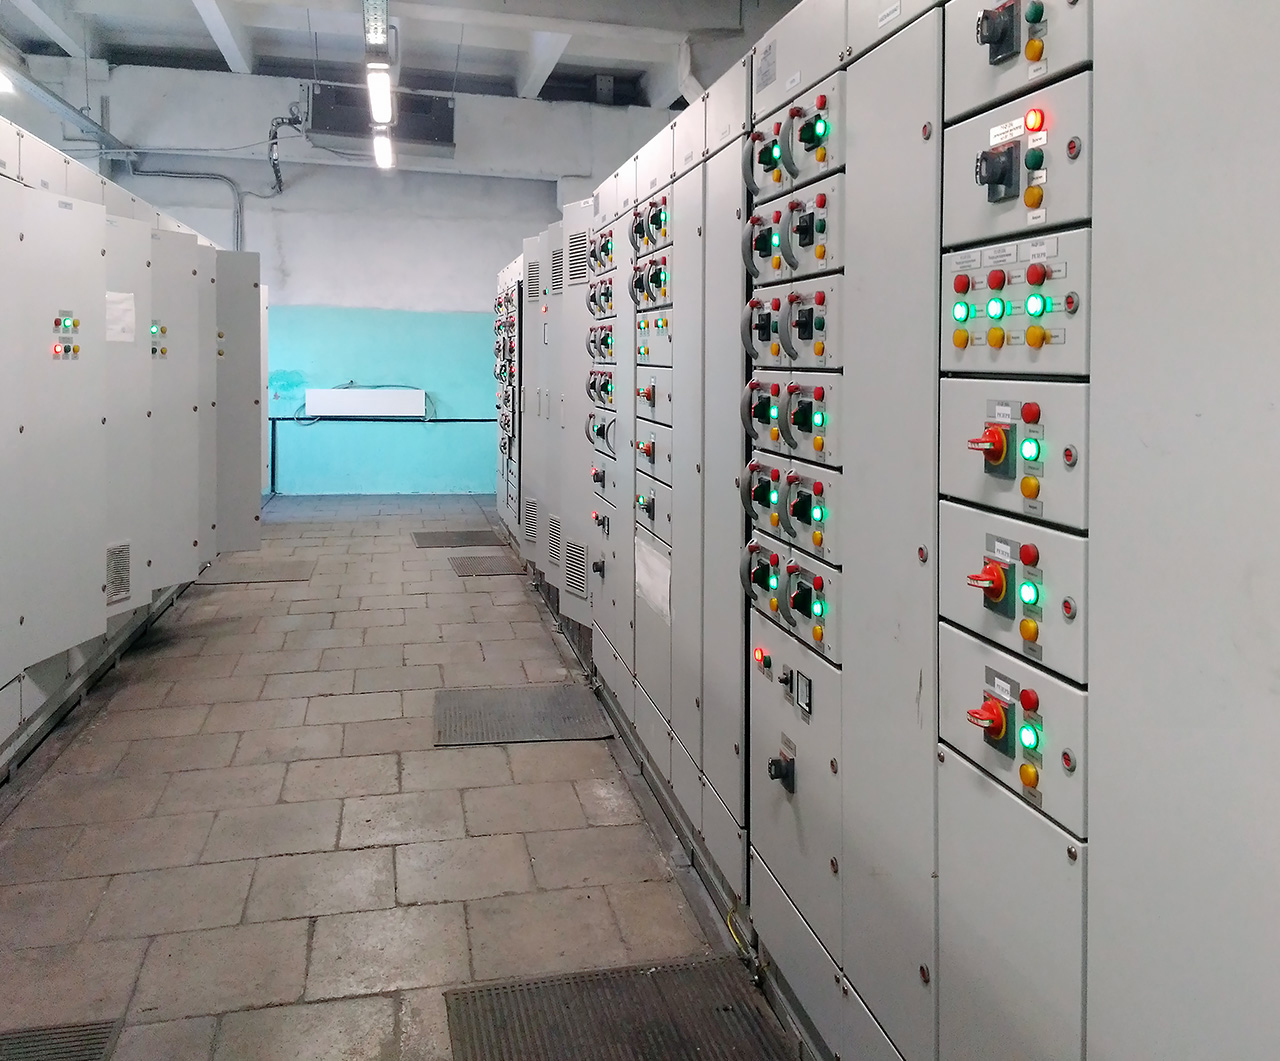 НКУ (низковольтные комплектные устройства) производства ЧЭК для распределения электрической энергии